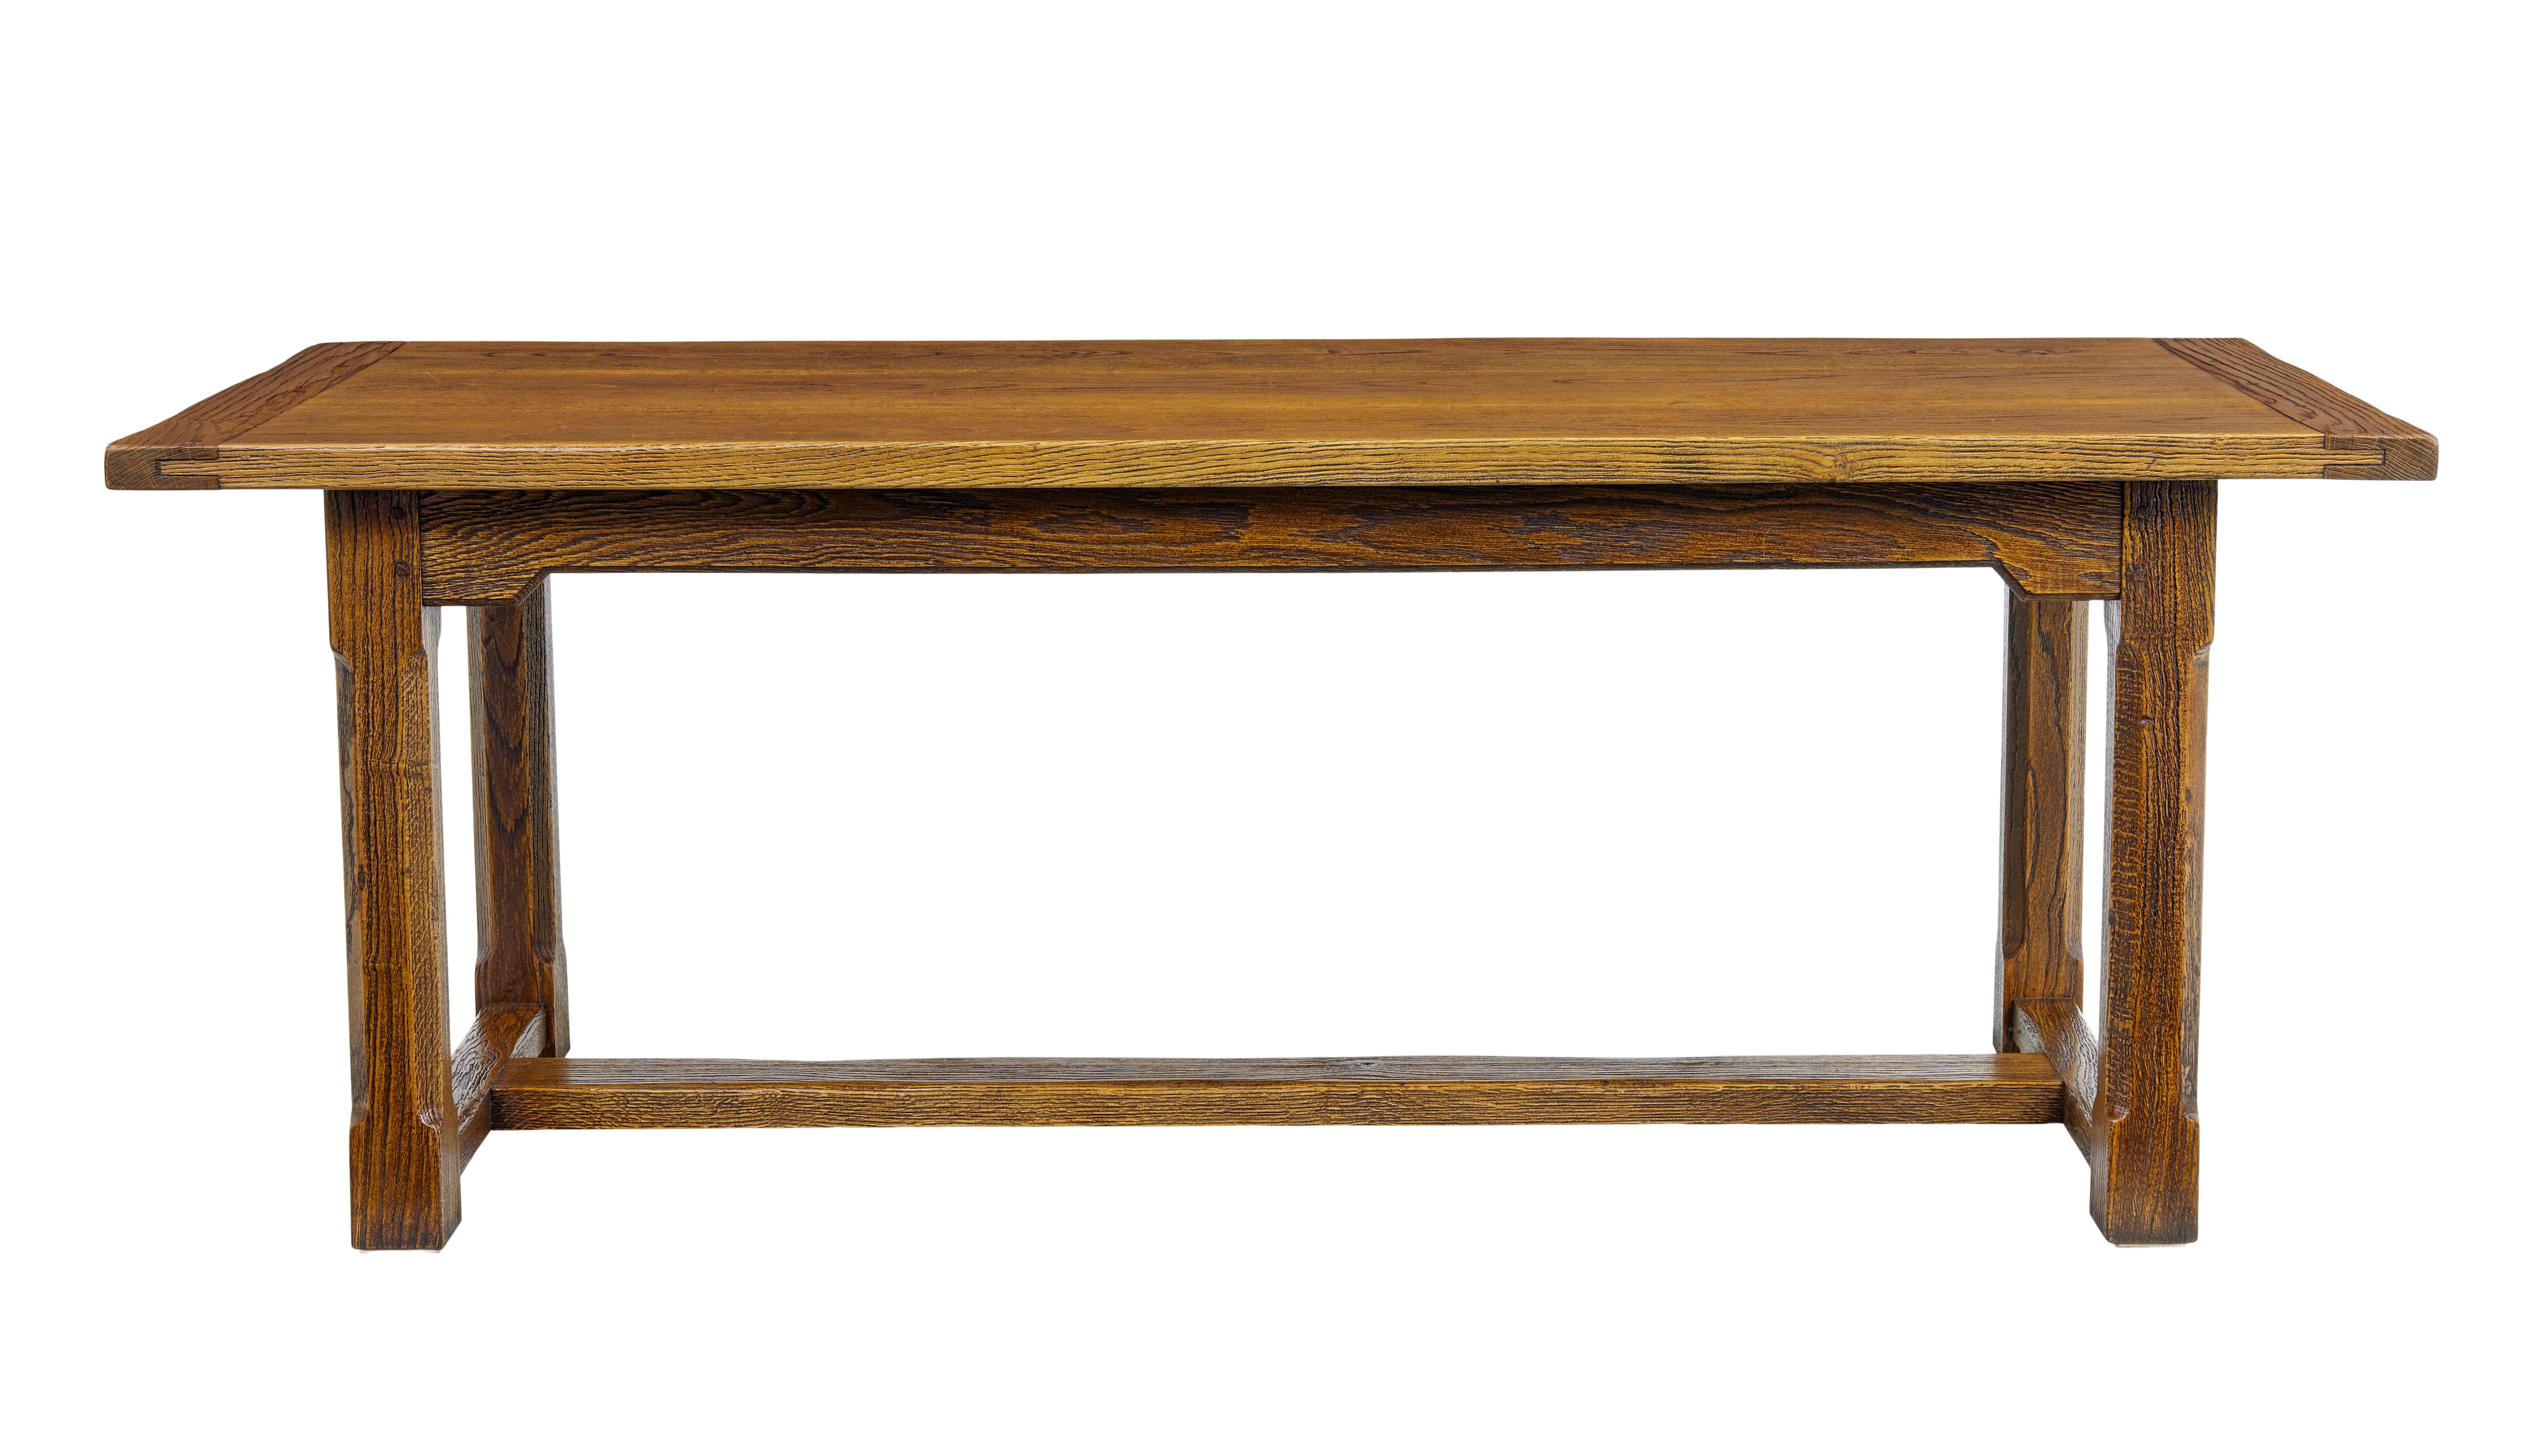 Table de réfectoire en chêne doré de fabrication anglaise, vers 1990.

Fabriqué en chêne massif, il est présenté avec un grain ouvert sur les surfaces, scellé avec du vernis pour mettre en valeur la riche couleur dorée.  Il peut accueillir